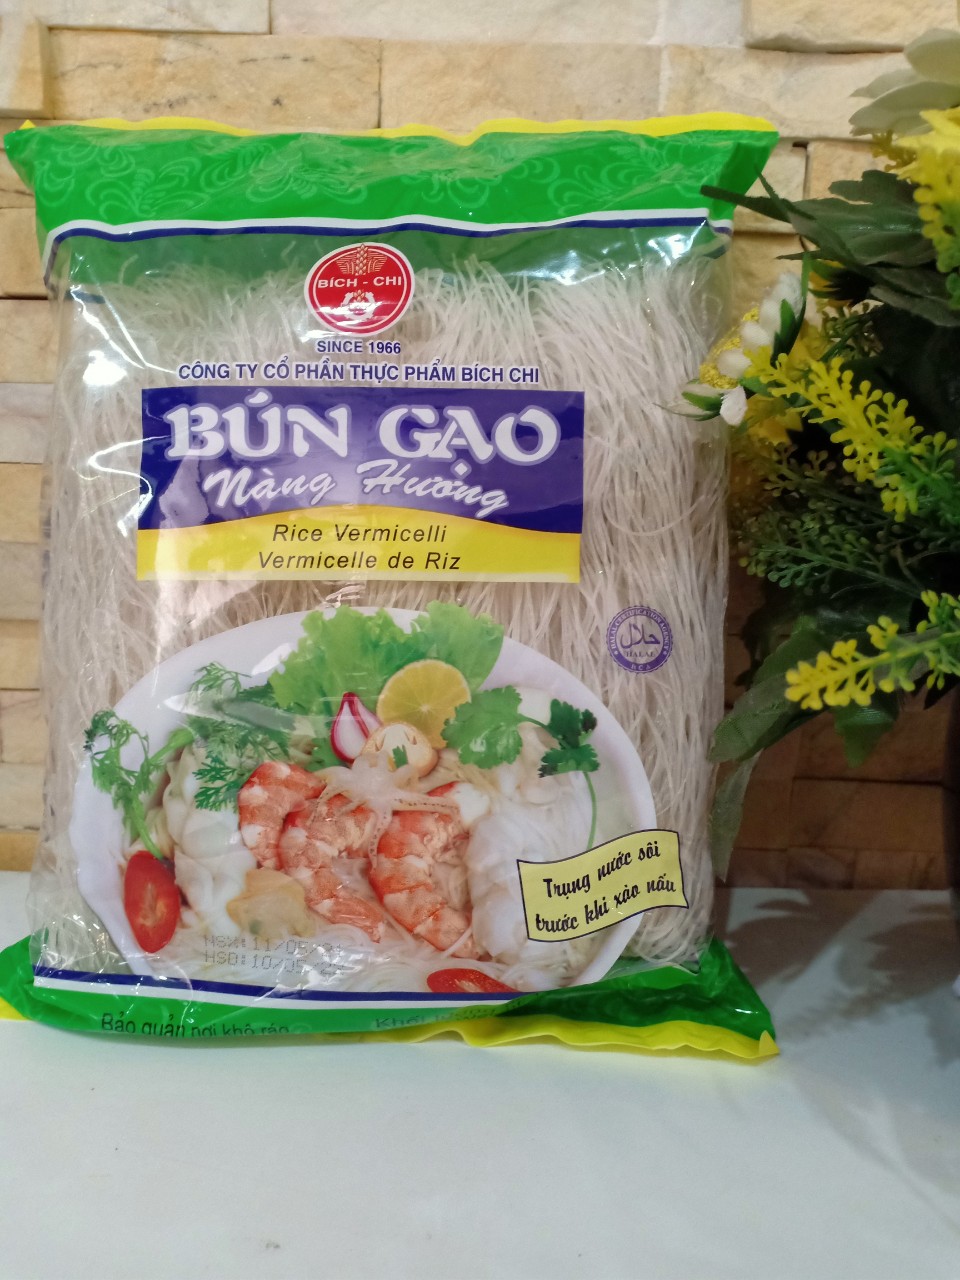 400 gram Bún gạo nàng hương công ty Bích Chi